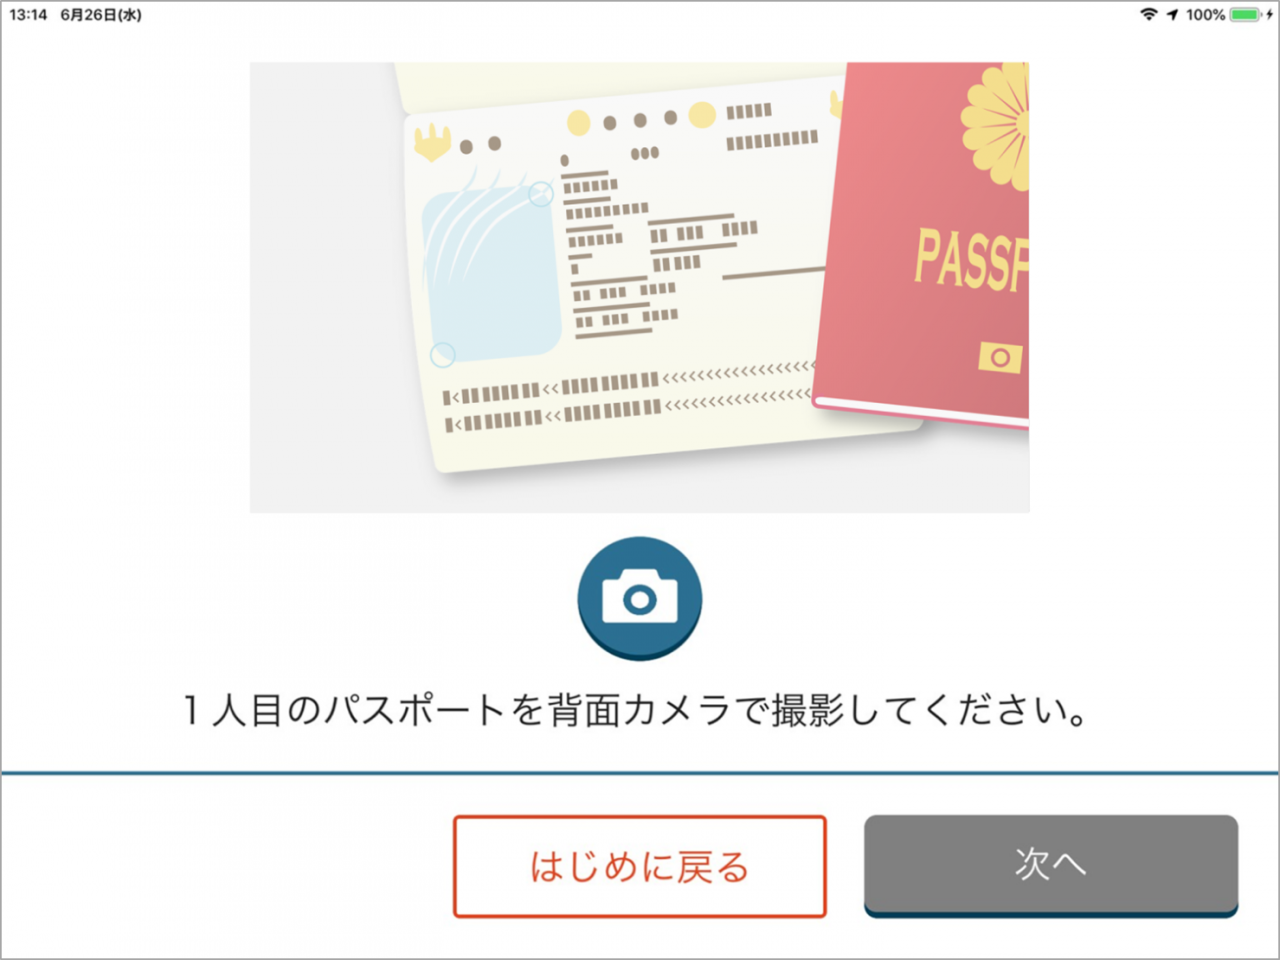 オープンセサミ(民泊チェックインシステム)の機能③パスポート撮影